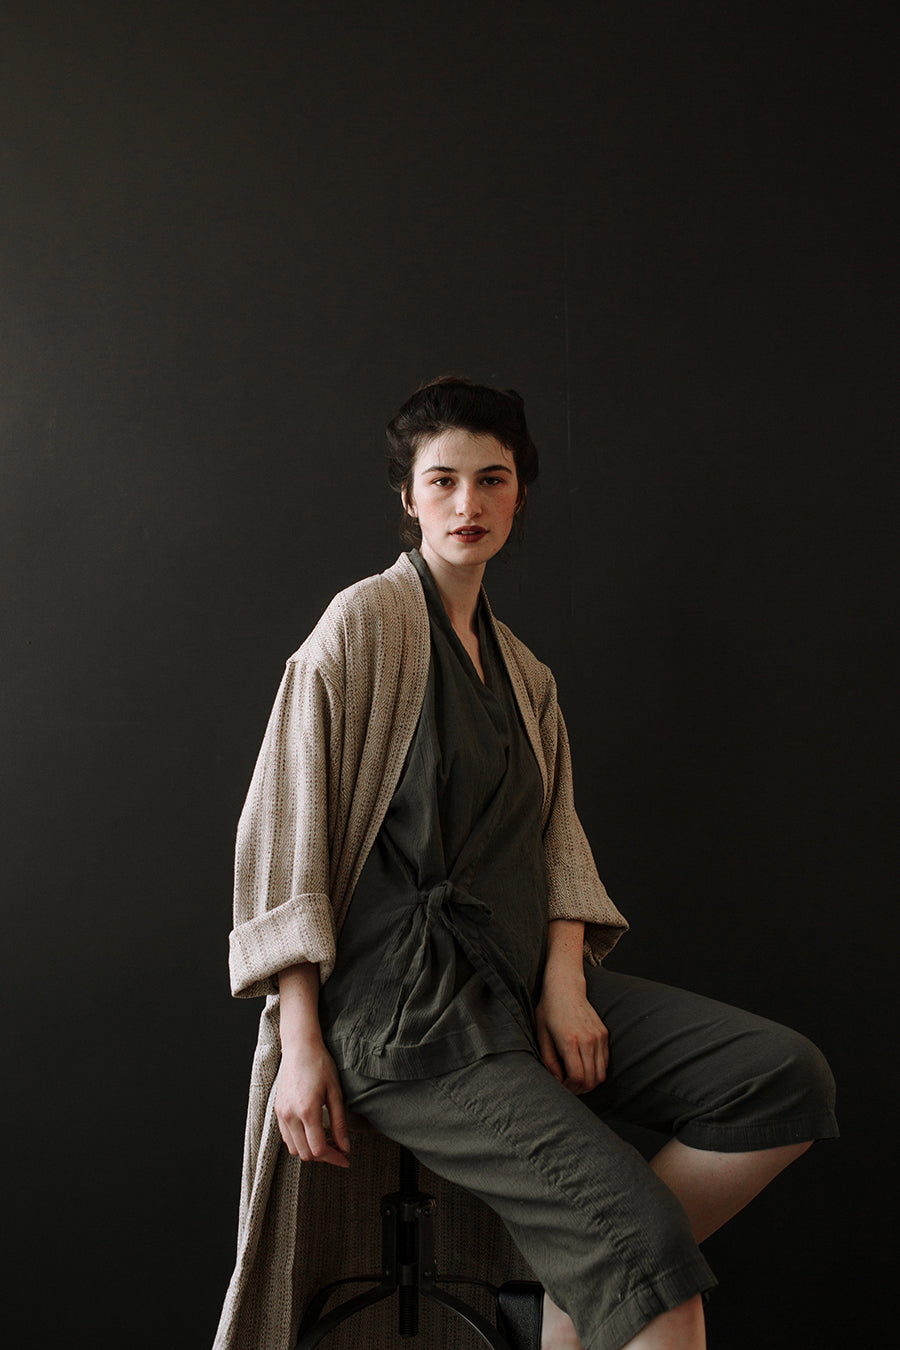 Balci Robe  Luxury Unisex Cotton/Linen Handwoven Turkish Robe in